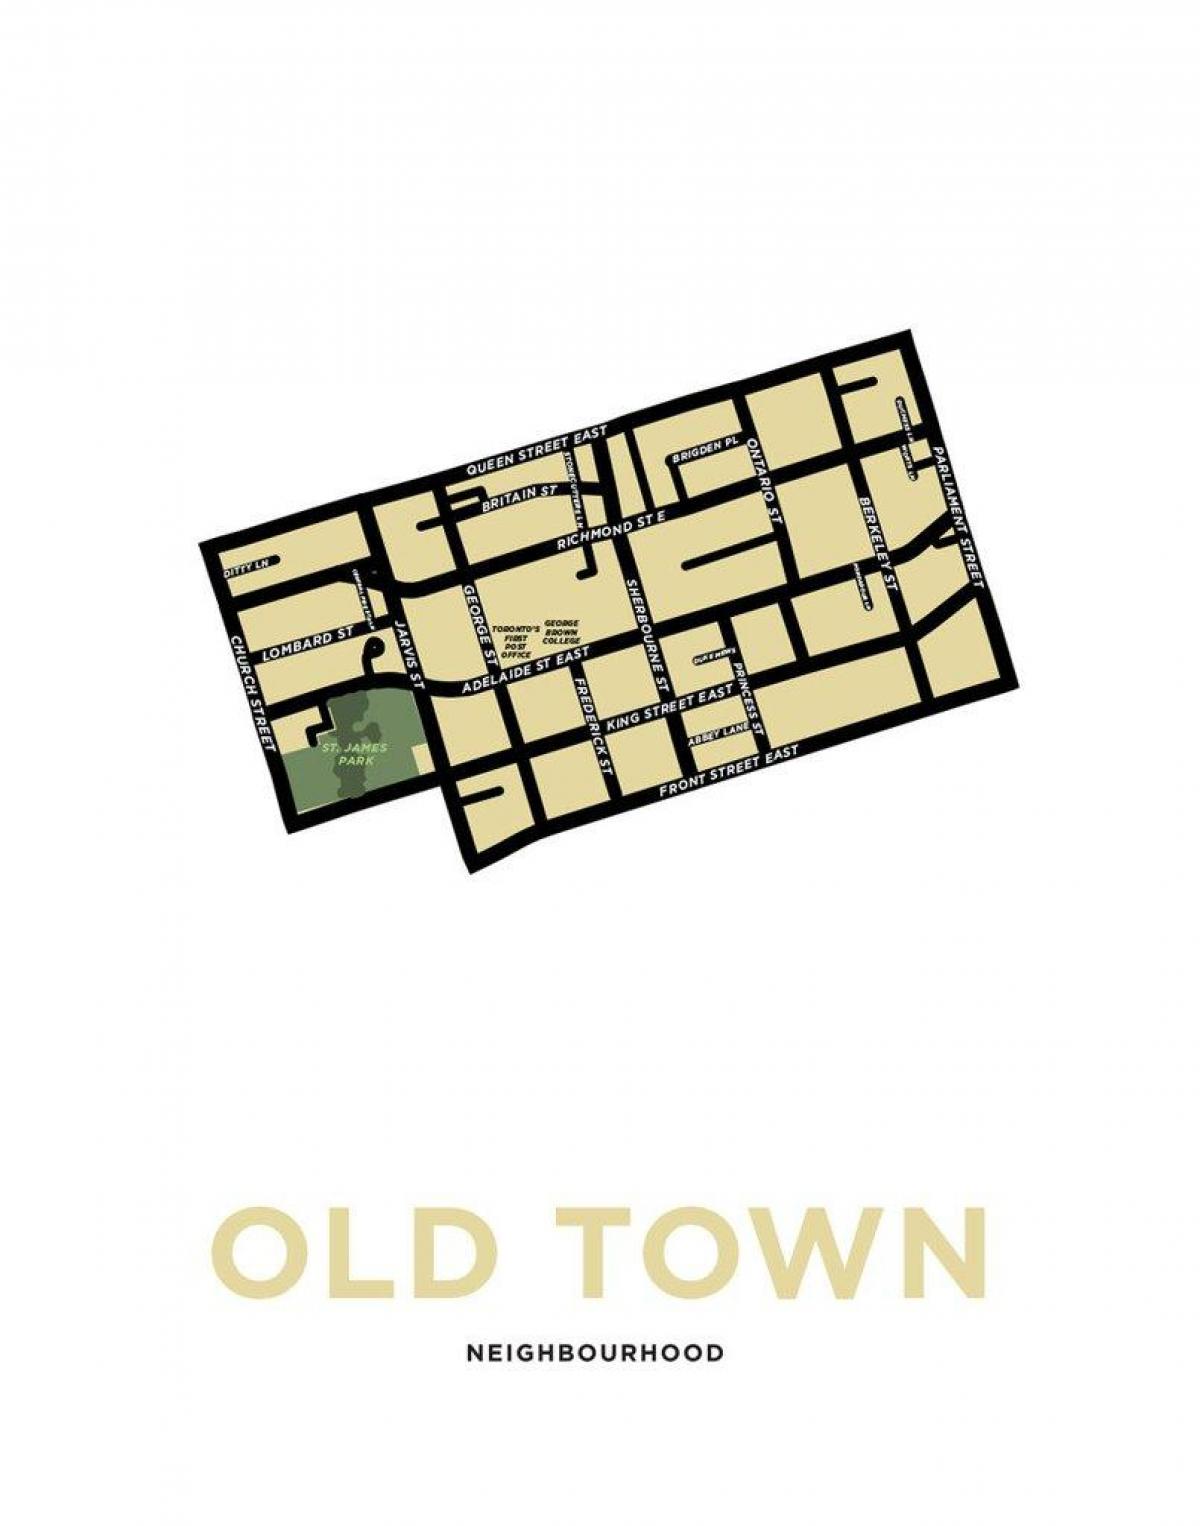 Karti susjedstvu Stari grad Toronto